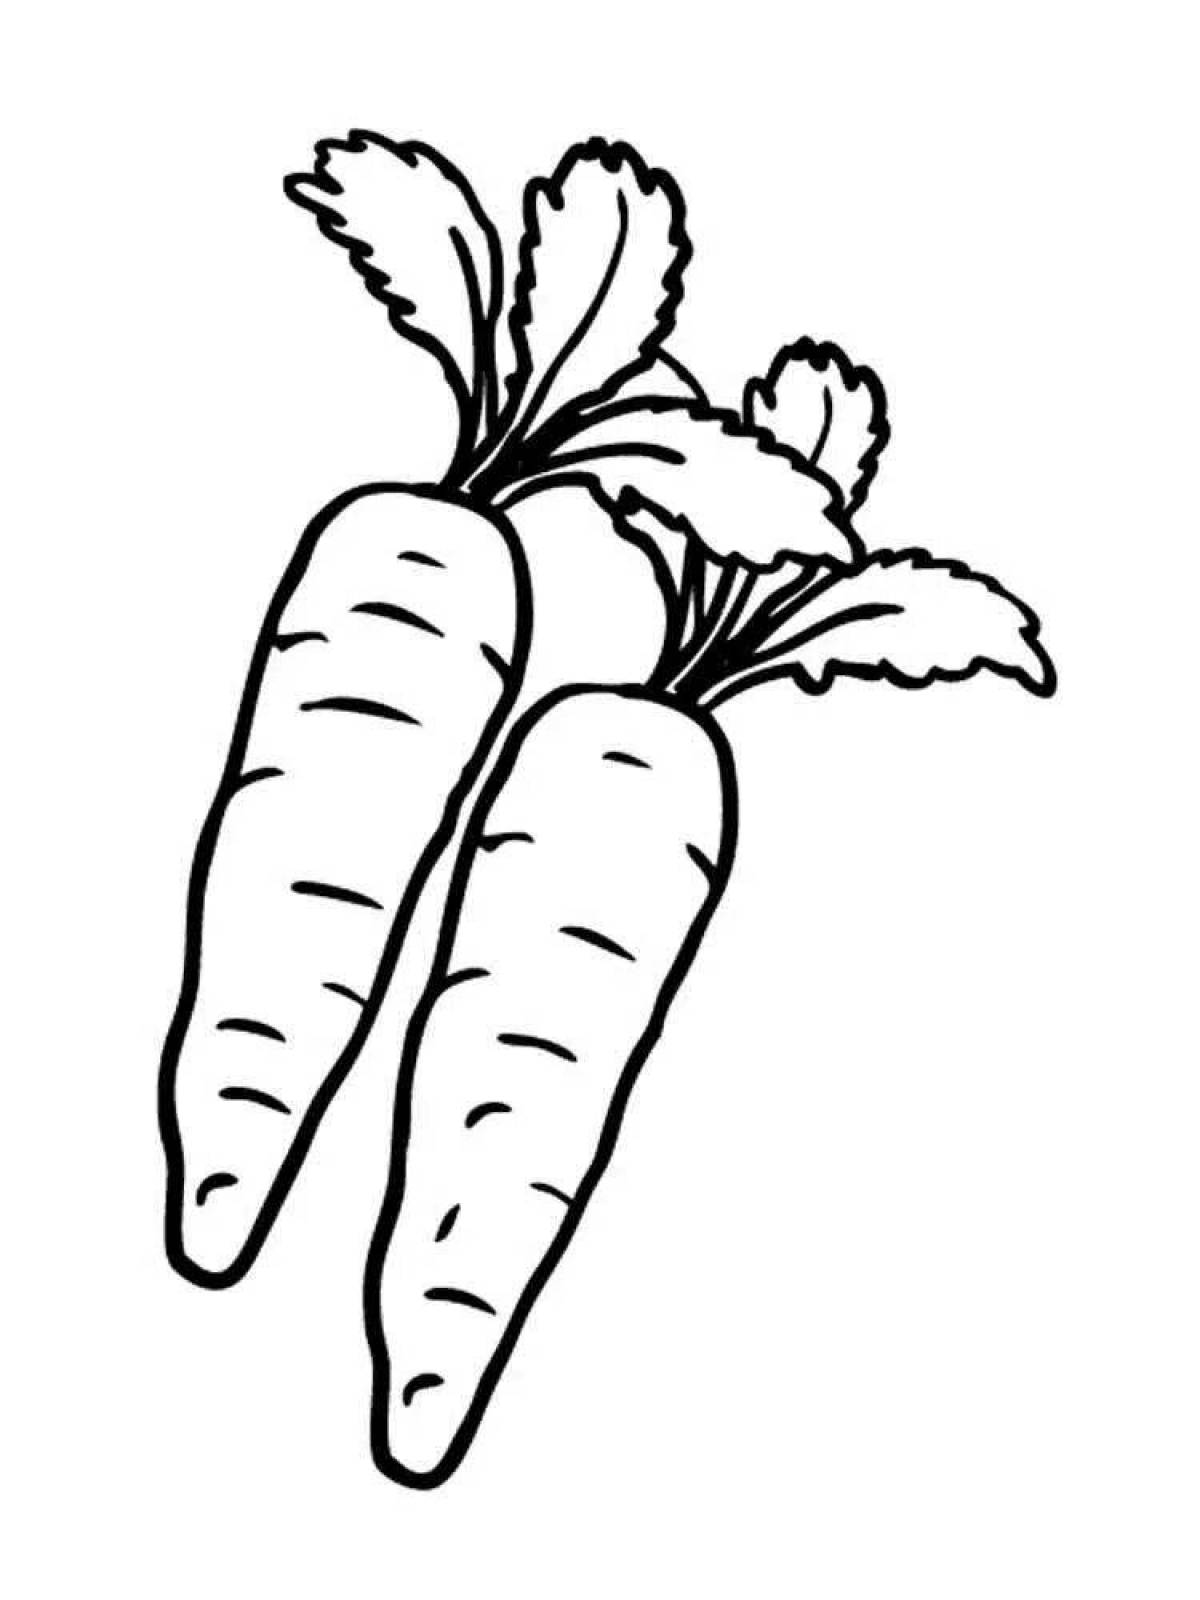 Fun drawing of a carrot